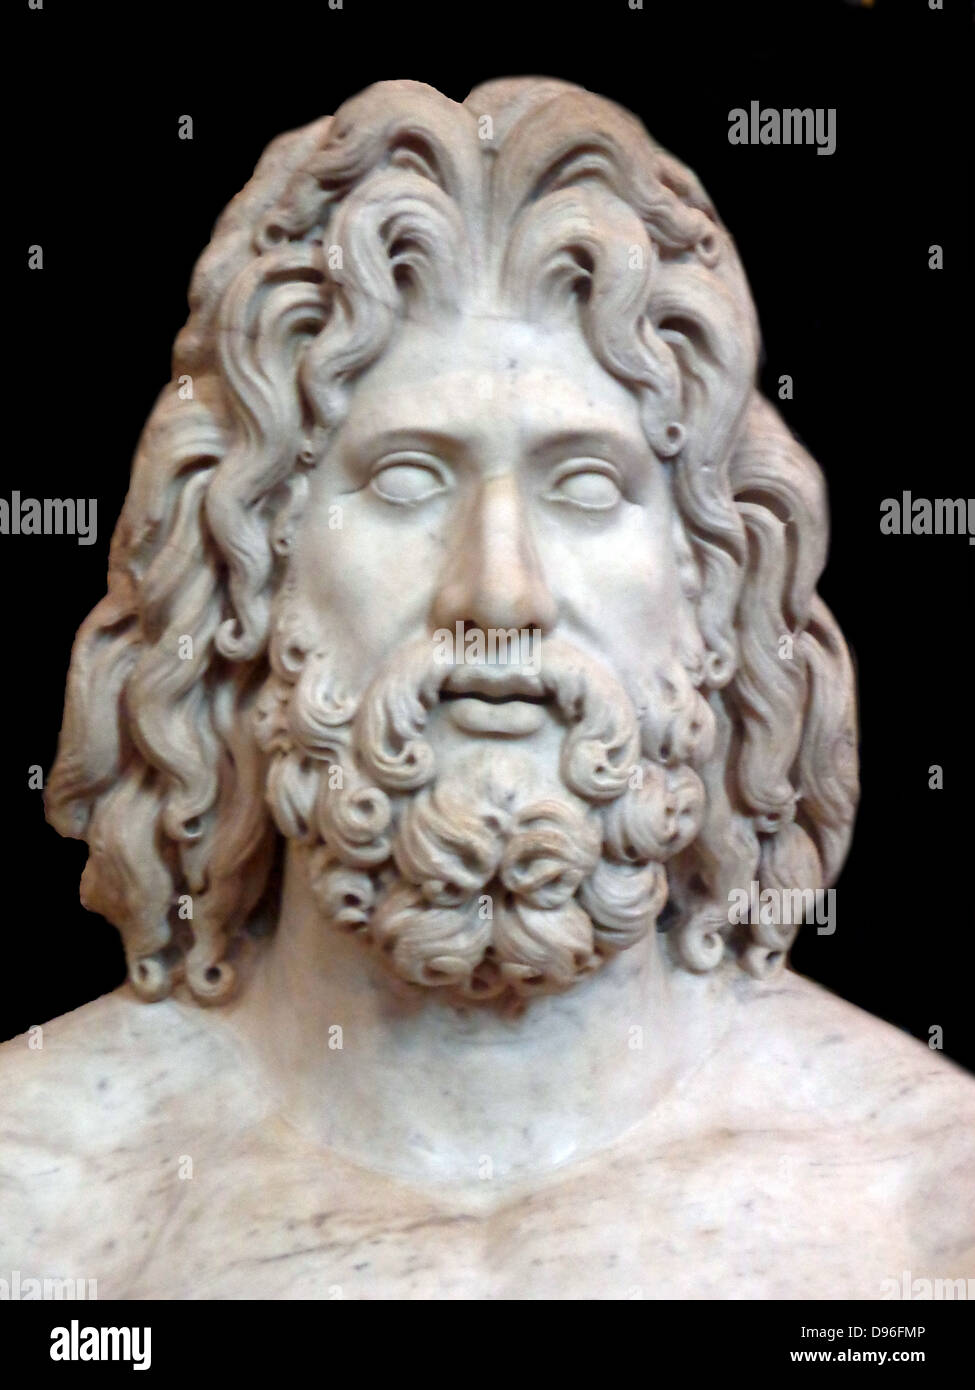 Colossale scultura in marmo della testa di Zeus. Da Tivoli, trovato nella villa dell'imperatore romano Adriano. Foto Stock